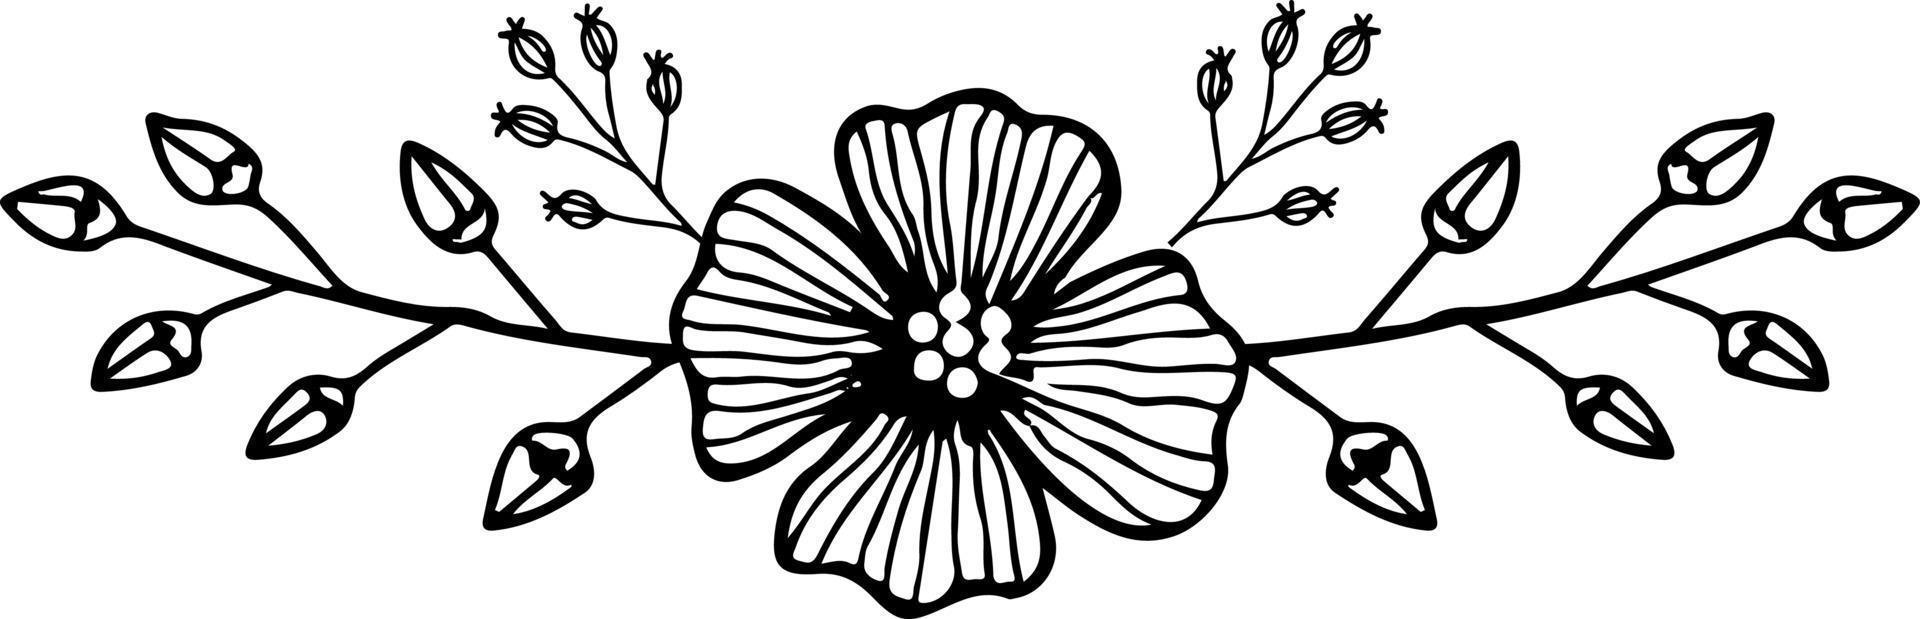 Vektor-Illustration eines floralen Ornaments in schwarzen und weißen Farben vektor